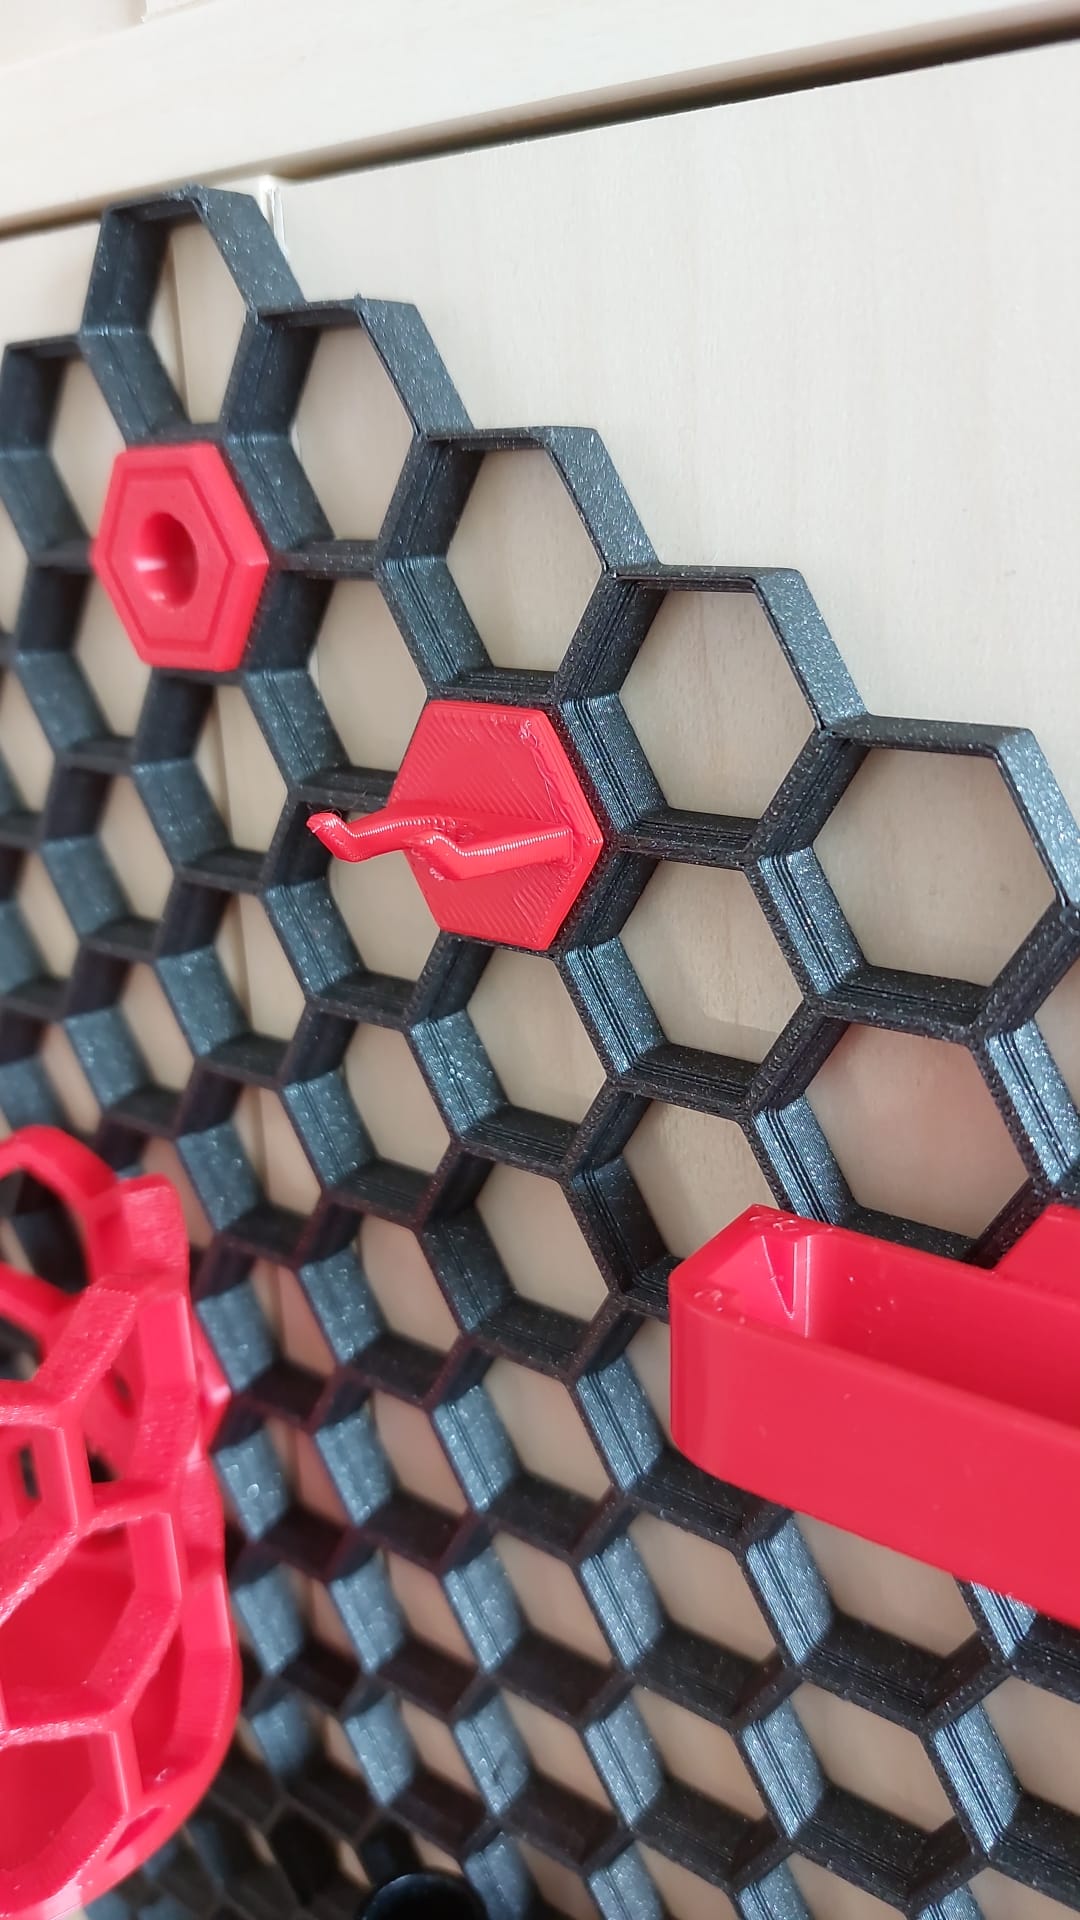 Honeycomb Wall Deburring Tool Hanger by KRKnet | Download free STL ...